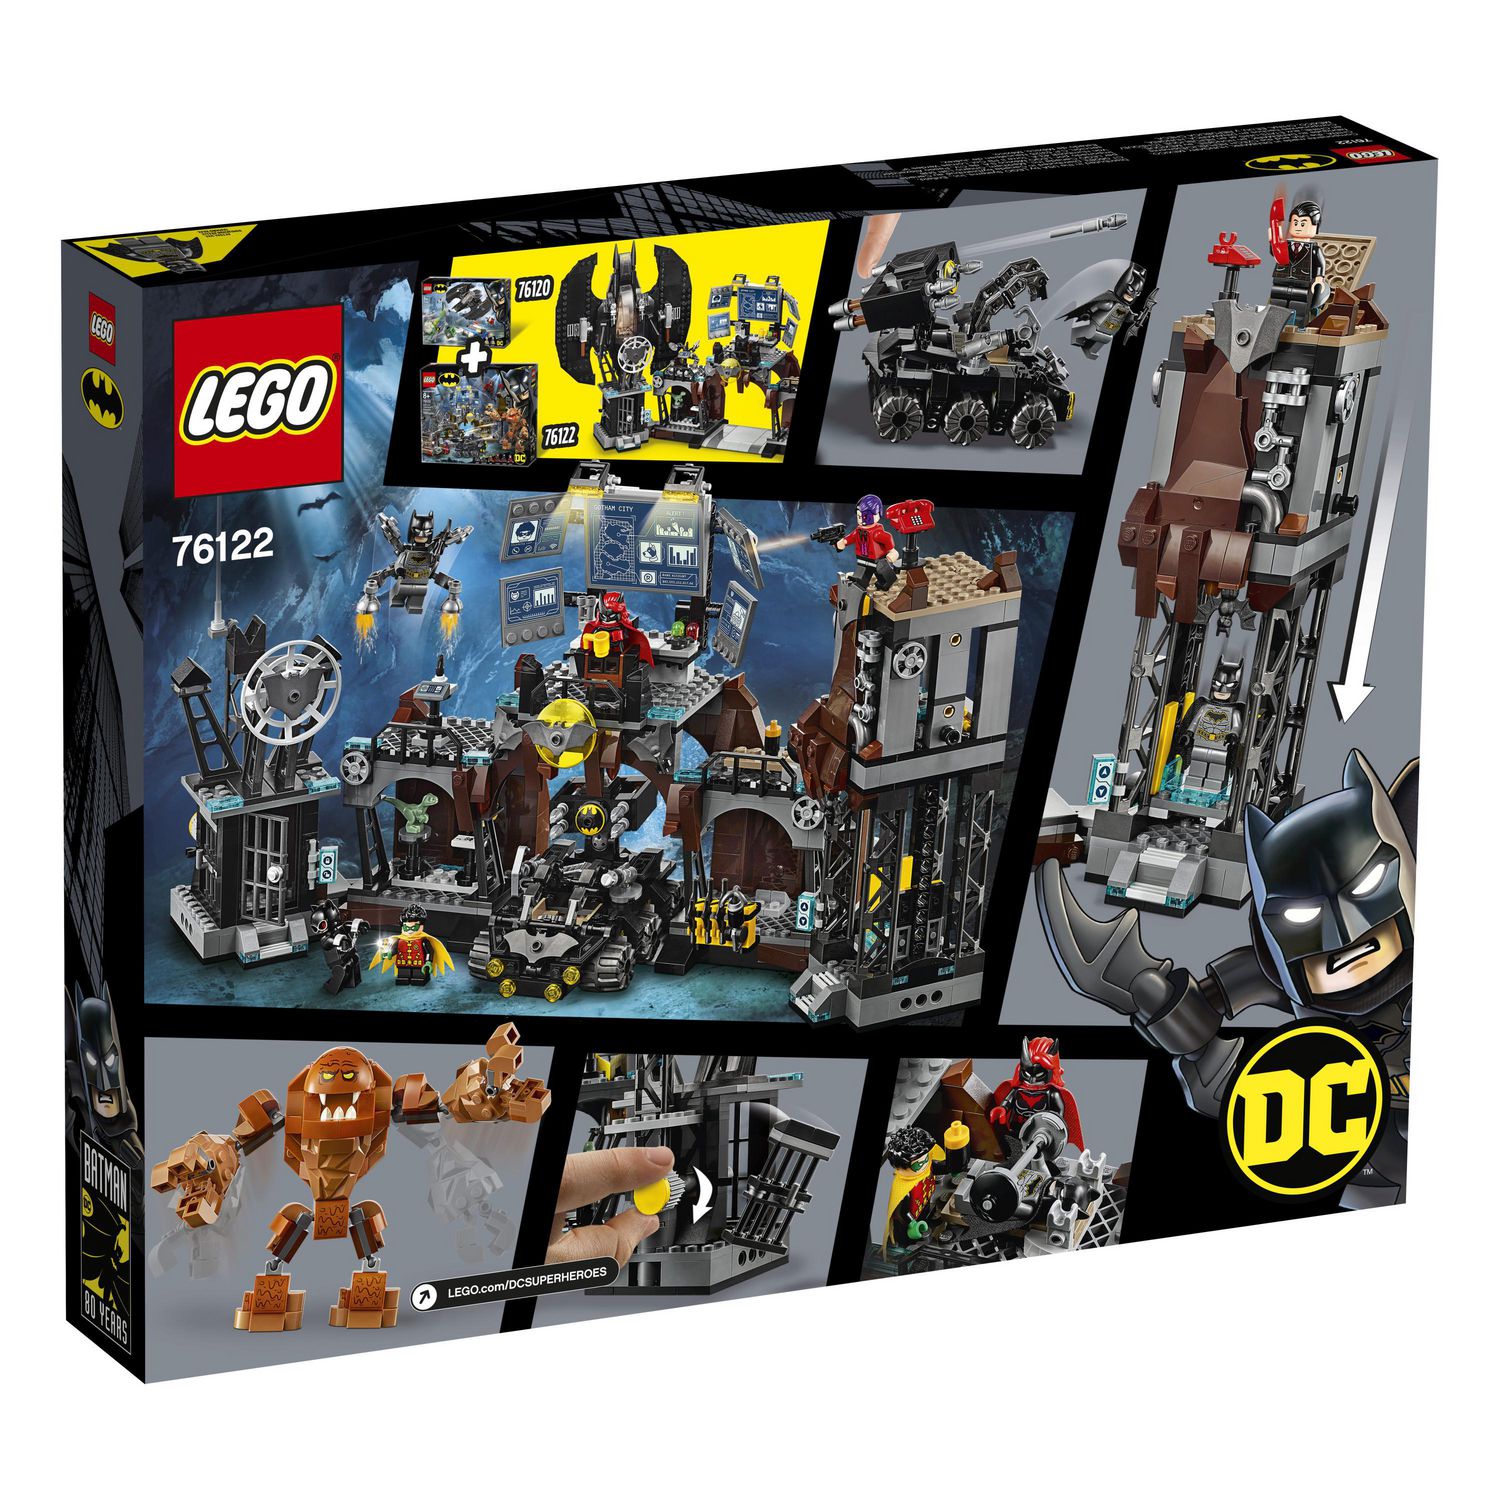 LEGO DC Batman Batcave Clayface Invasion 76122 Toy Building Kit